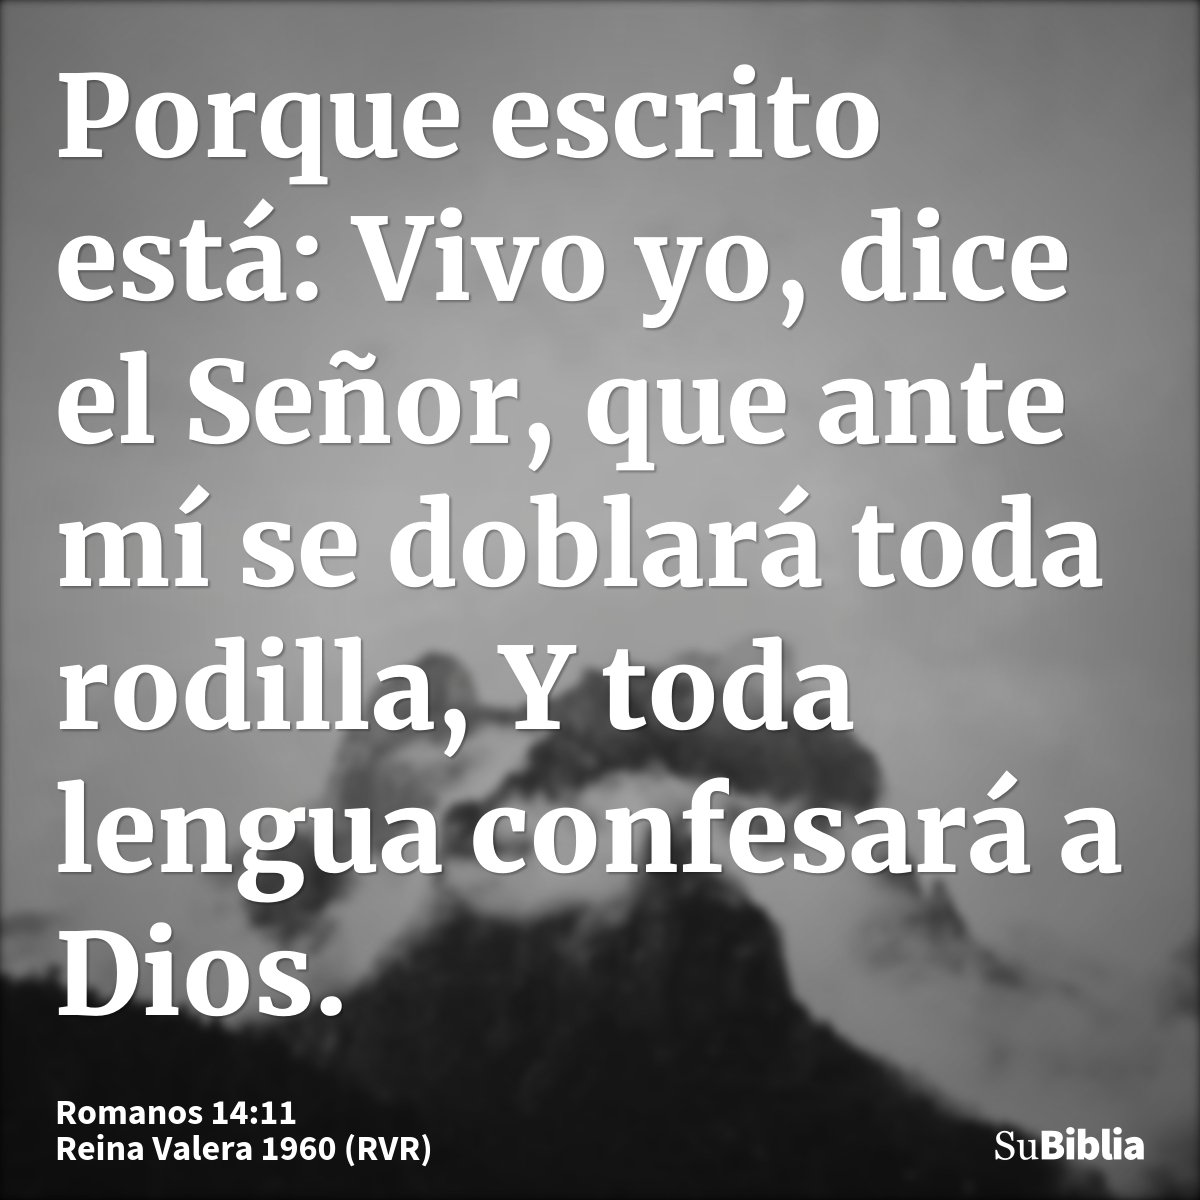 Porque escrito está: Vivo yo, dice el Señor, que ante mí se doblará toda rodilla, Y toda lengua confesará a Dios.